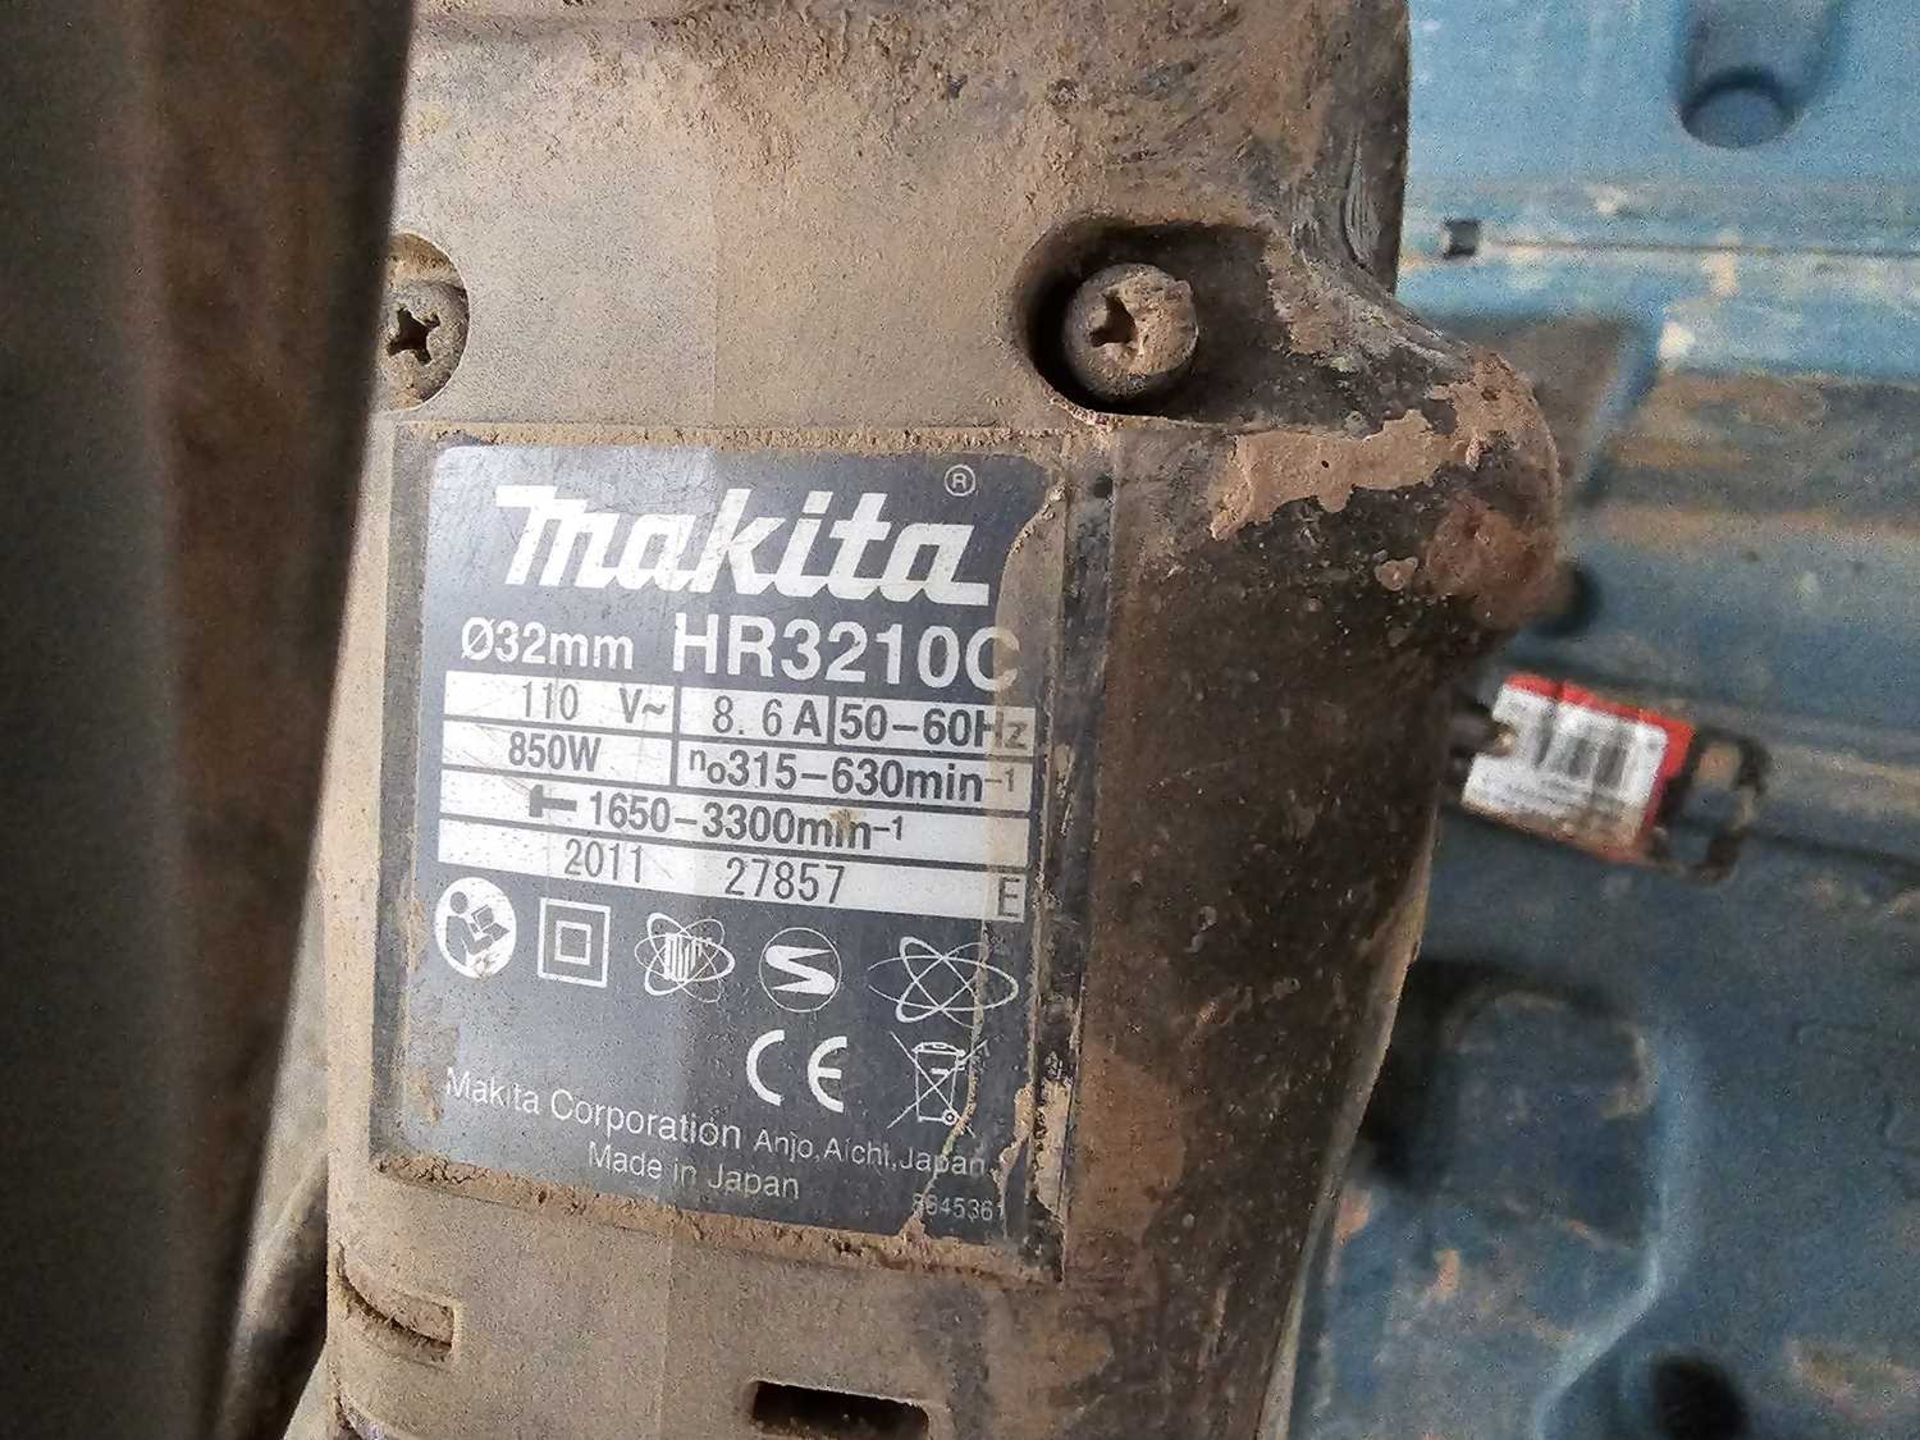 Makita HR3210c Hammer Drill - Image 3 of 4